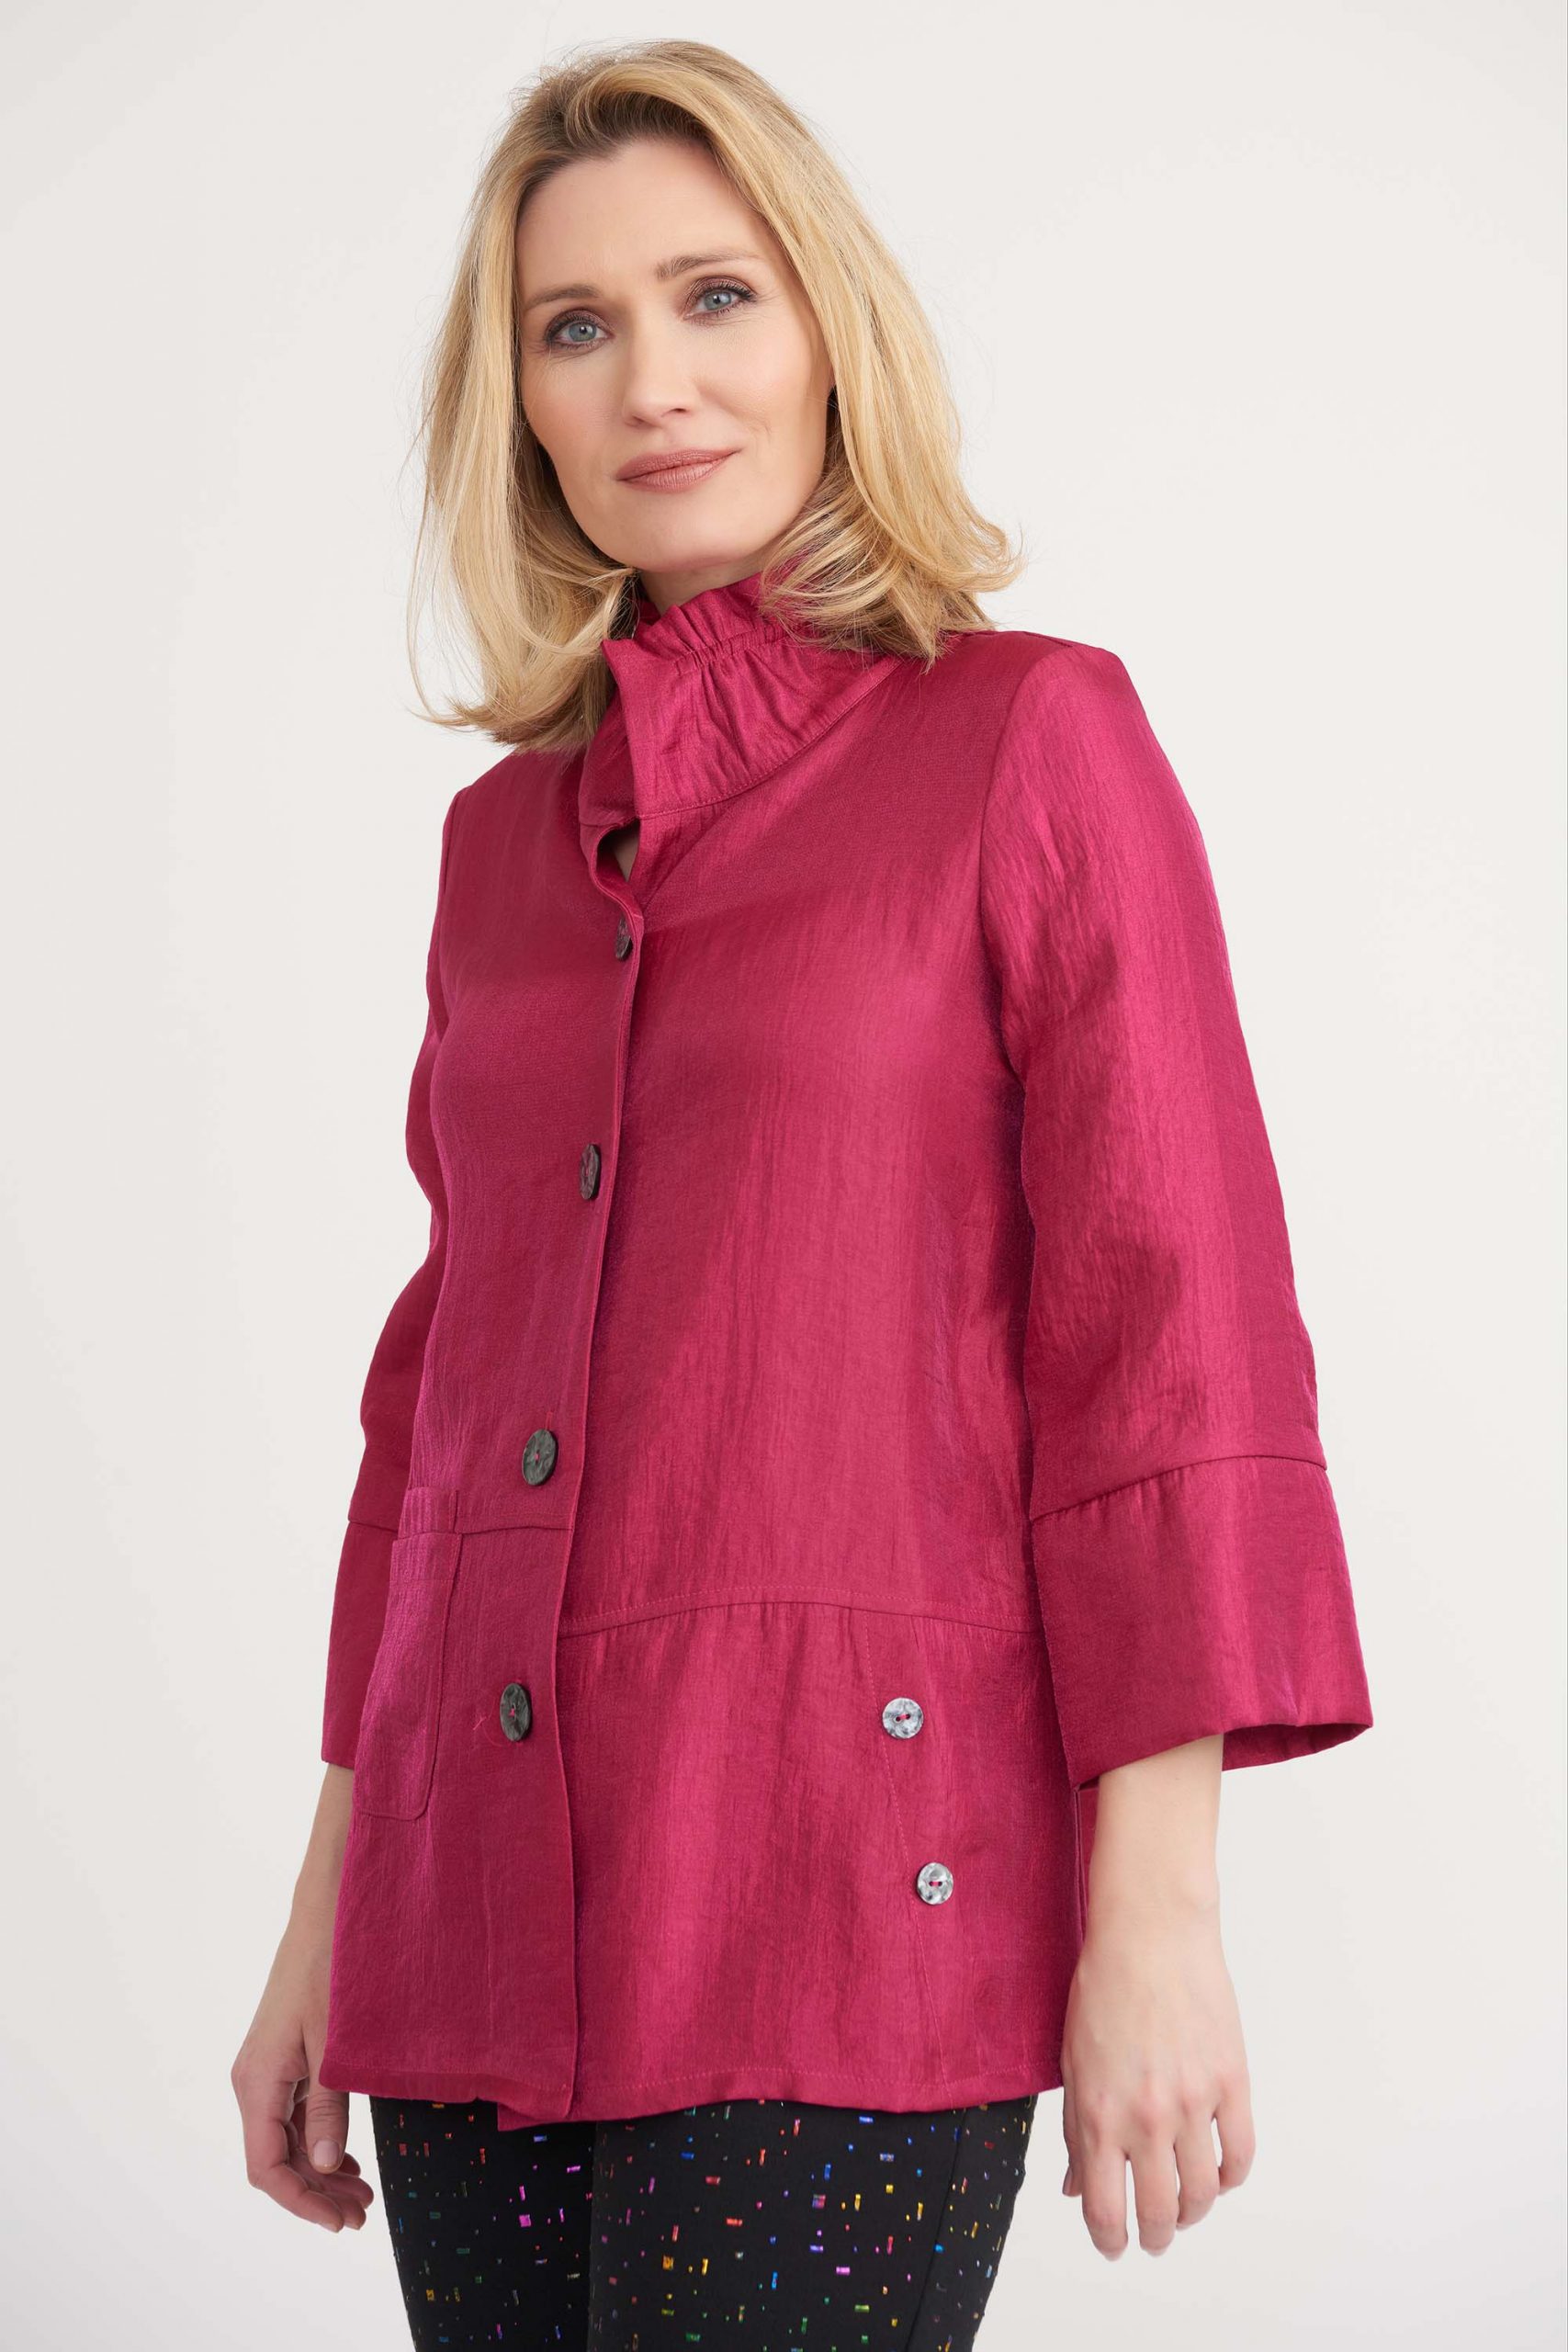 Joseph Ribkoff jacket 203272- size 18 - Slate Clothing